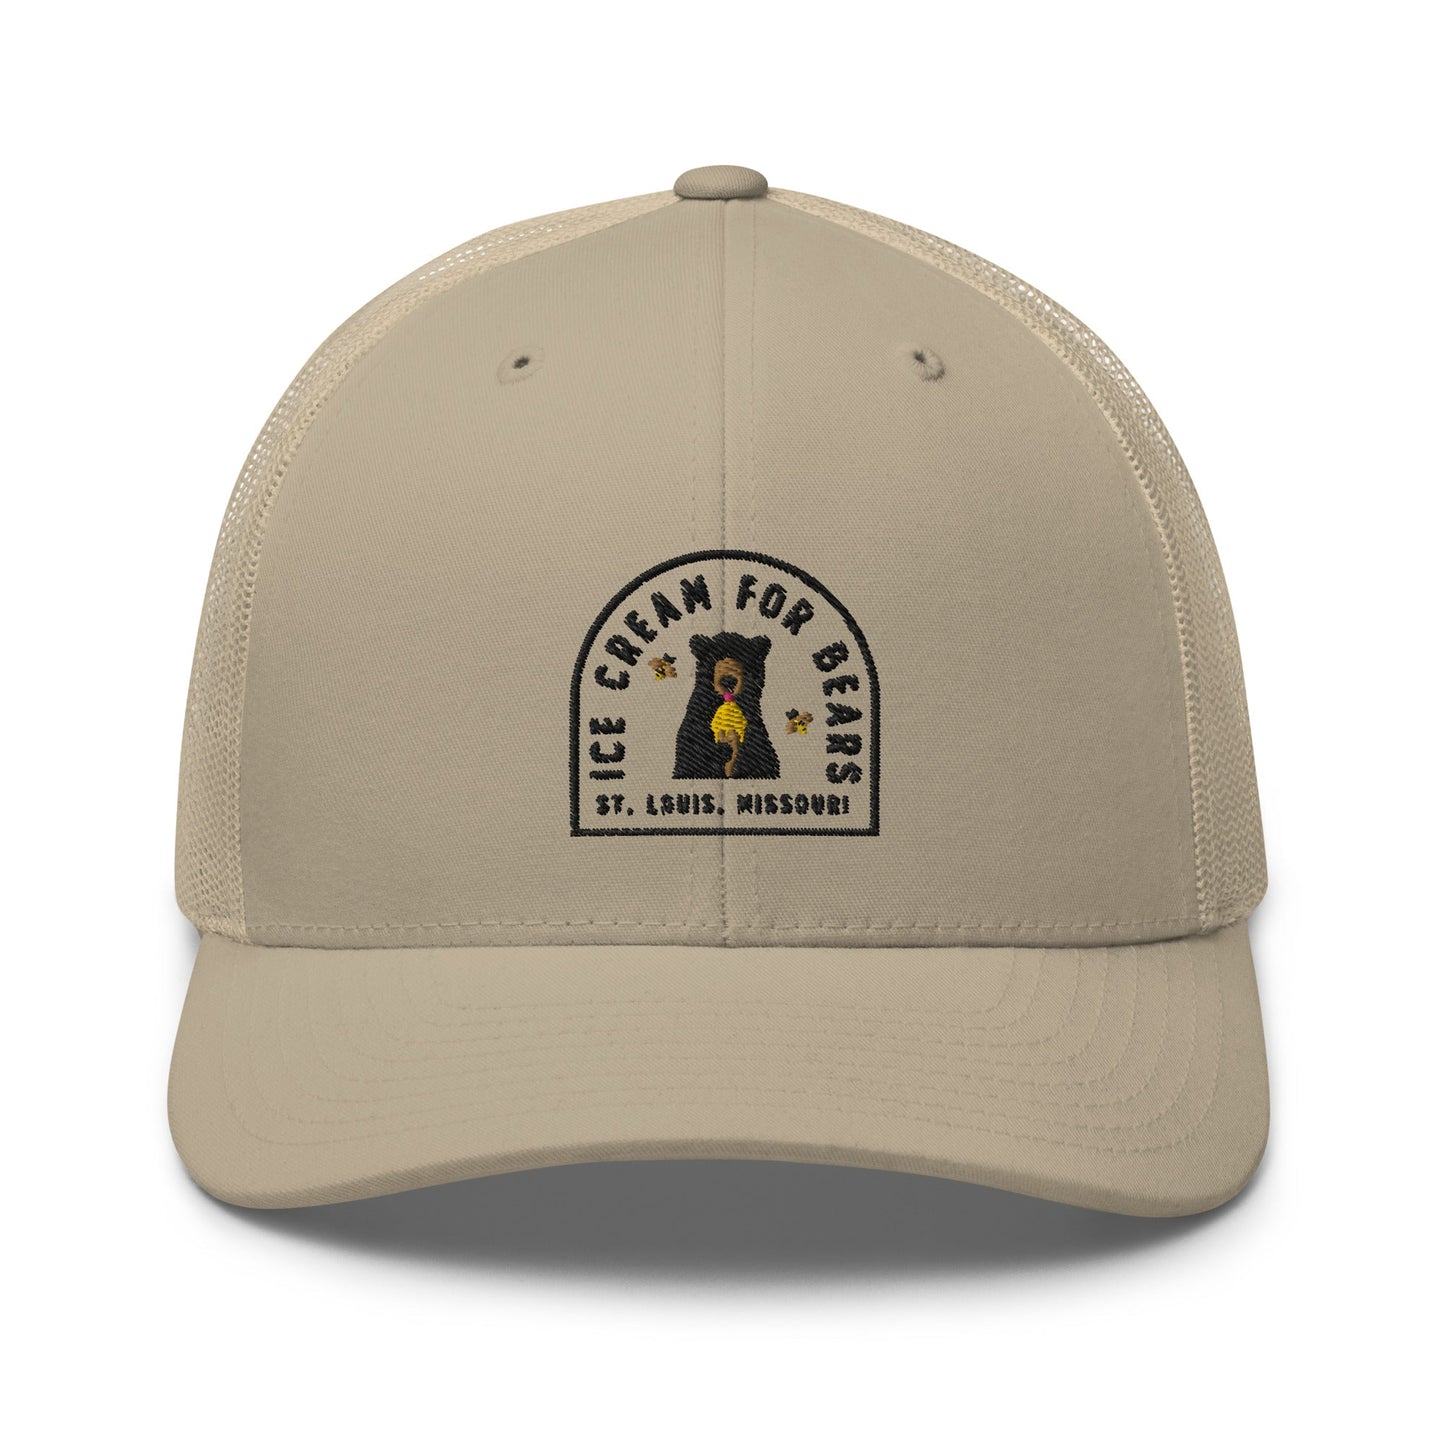 Location Stamp Trucker Hat